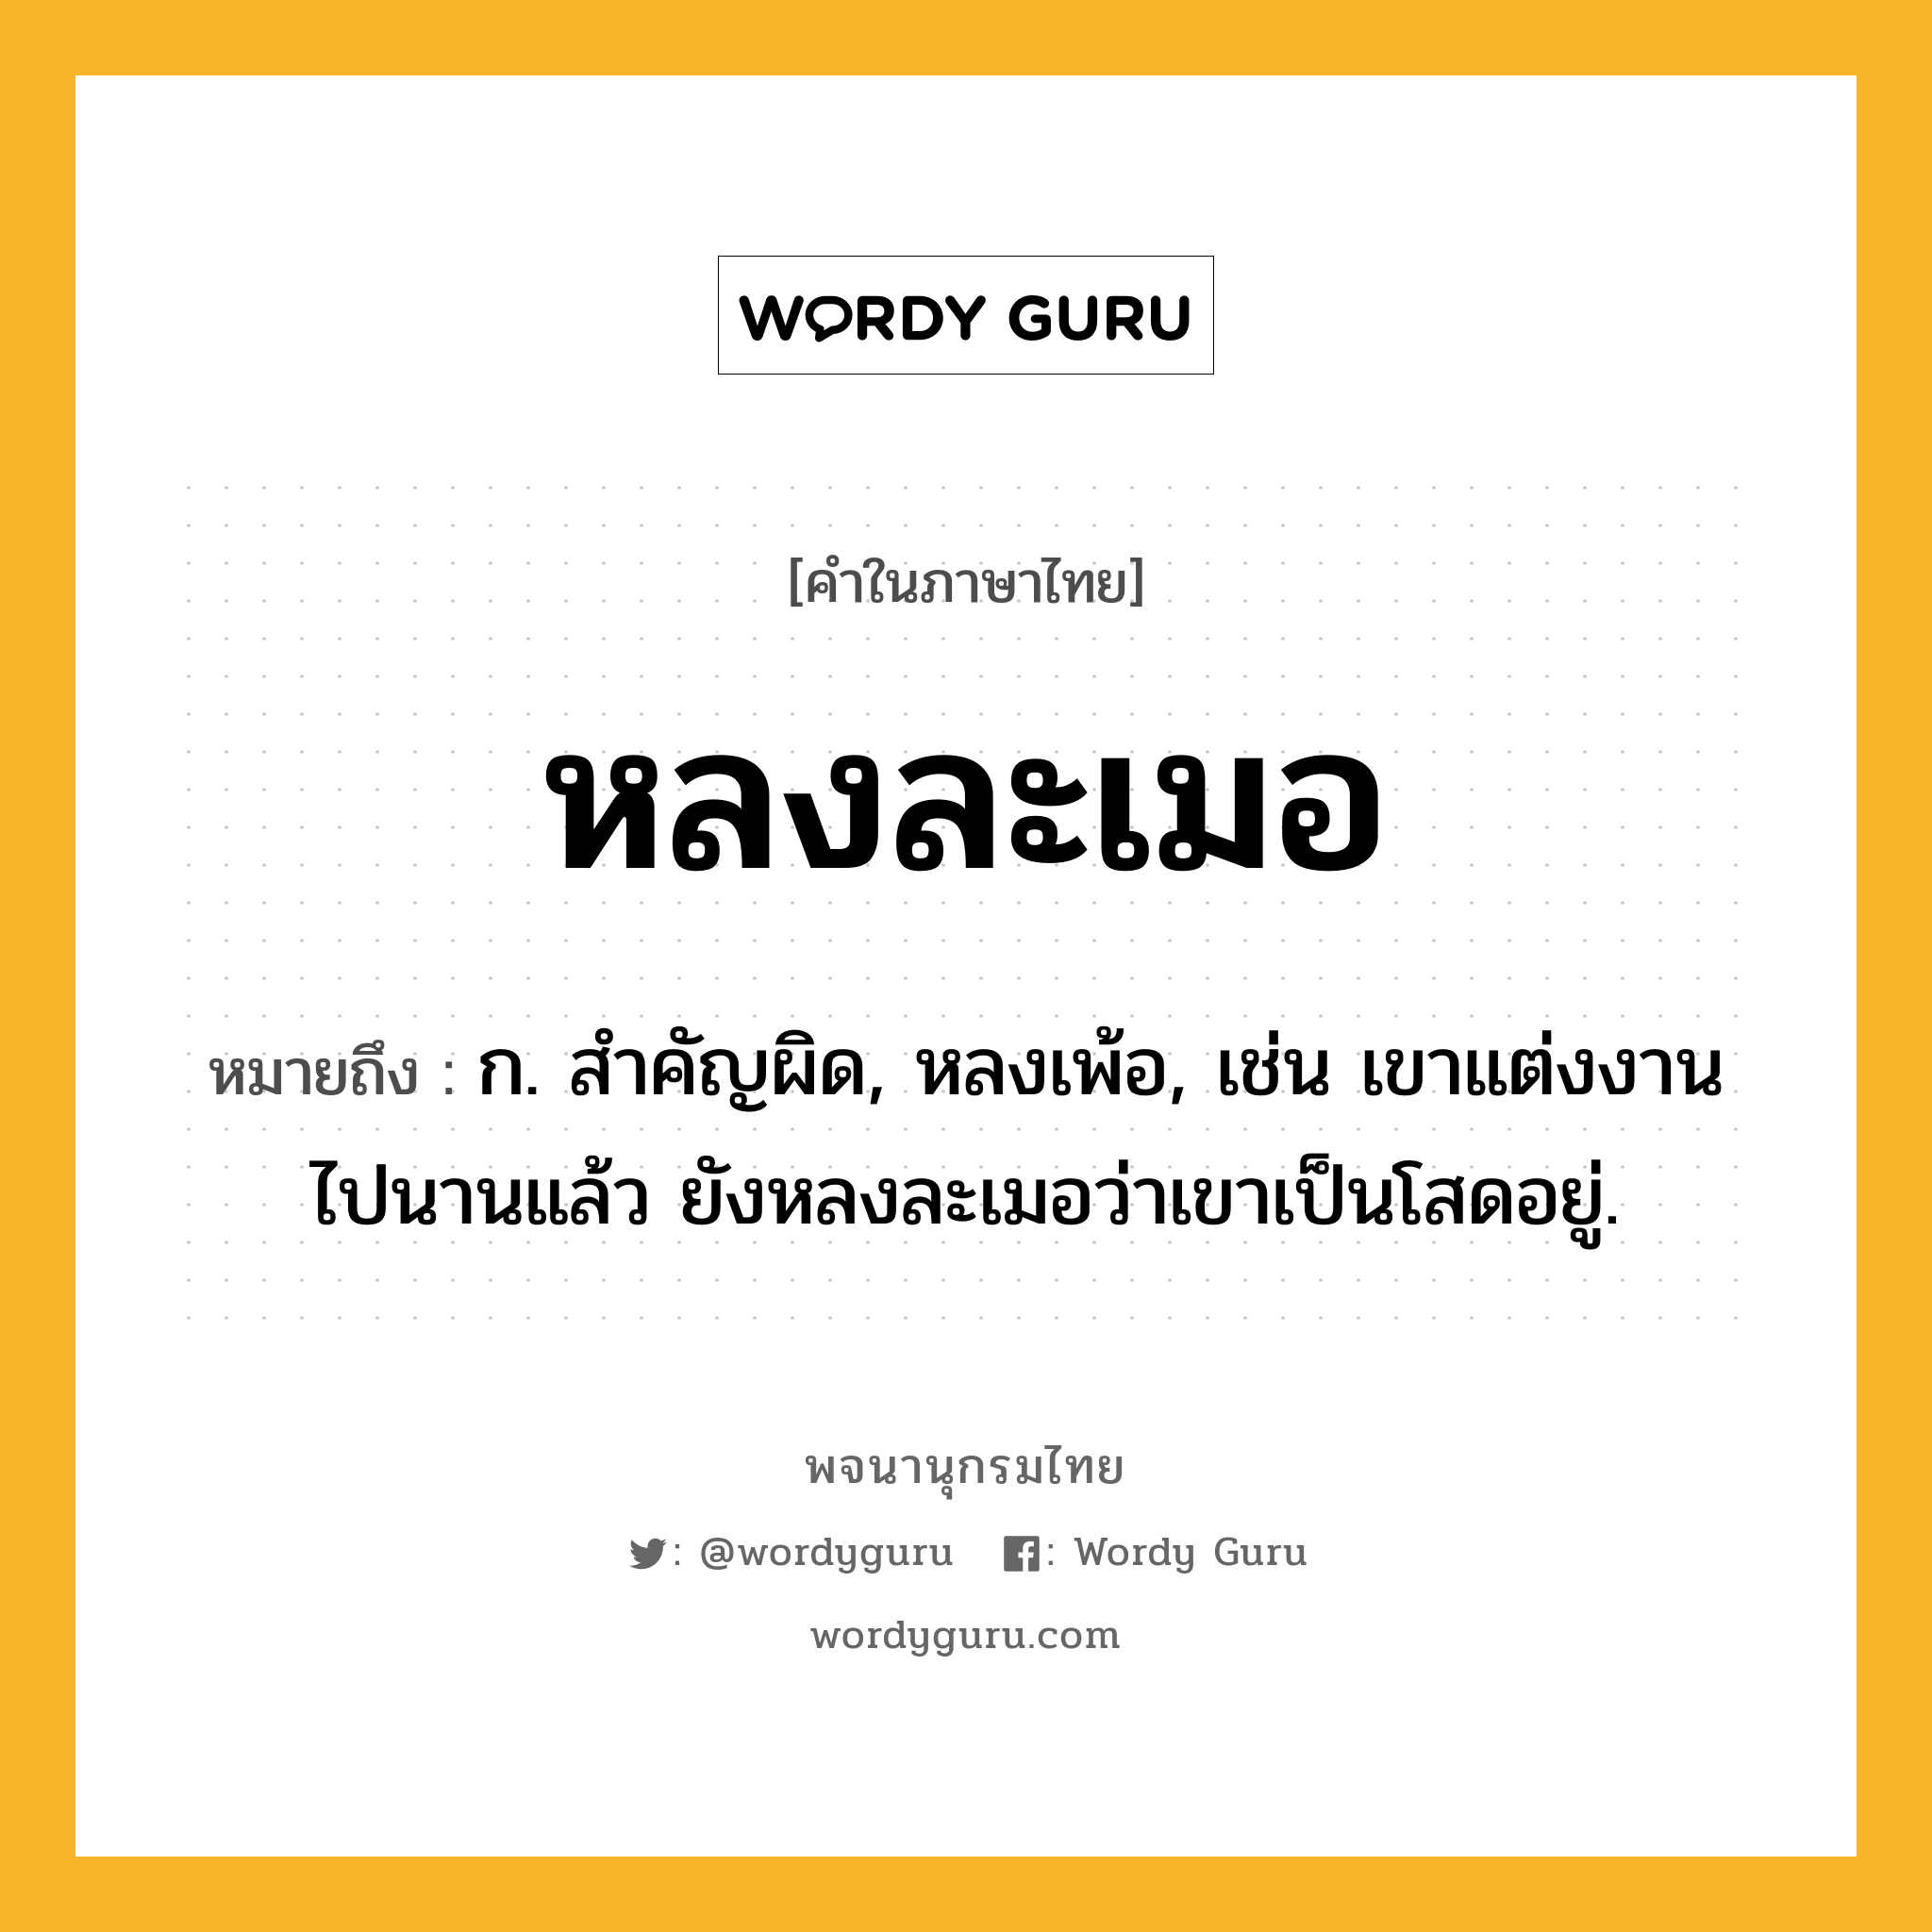 หลงละเมอ หมายถึงอะไร?, คำในภาษาไทย หลงละเมอ หมายถึง ก. สำคัญผิด, หลงเพ้อ, เช่น เขาแต่งงานไปนานแล้ว ยังหลงละเมอว่าเขาเป็นโสดอยู่.